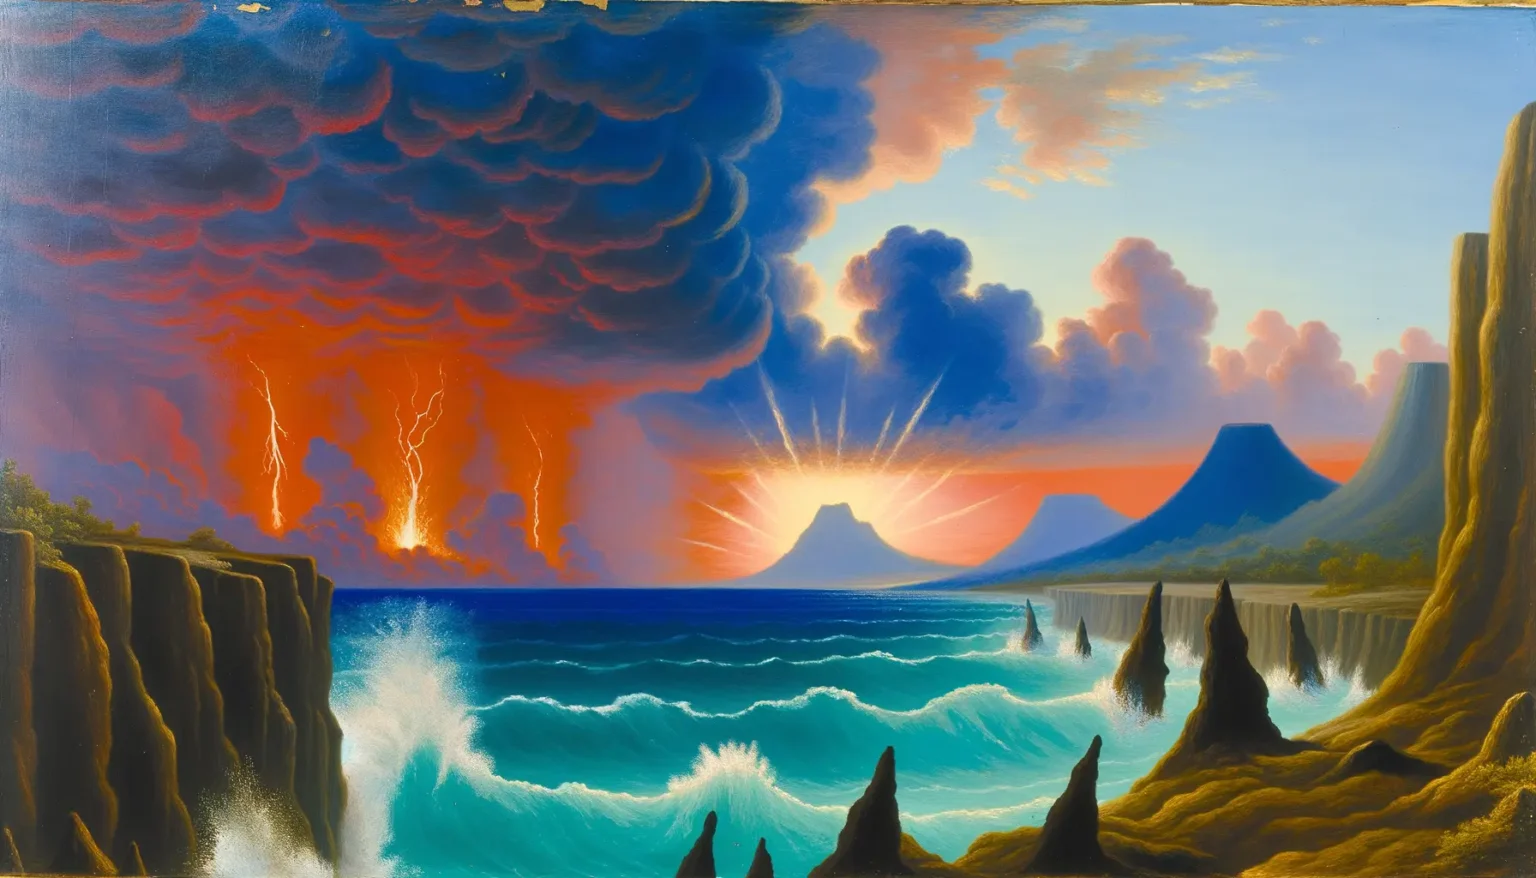 Ein dramatisches, farbenprächtiges Gemälde einer fantasievollen Landschaft mit mehreren Vulkanen. Im Vordergrund sind hohe Klippen und ein raues Meer mit Wellen zu sehen. In der Mitte des Bildes erhebt sich ein strahlender Vulkan, umgeben von kleineren Bergen und Wolken. Links oben befindet sich ein bedrohlicher, dunkelroter Himmel mit Blitzen, der nach rechts hin zu einem ruhigen blauen Abendhimmel mit rosa und orangefarbenen Wolken übergeht. Die Szene strahlt sowohl Dynamik als auch Ruhe aus.